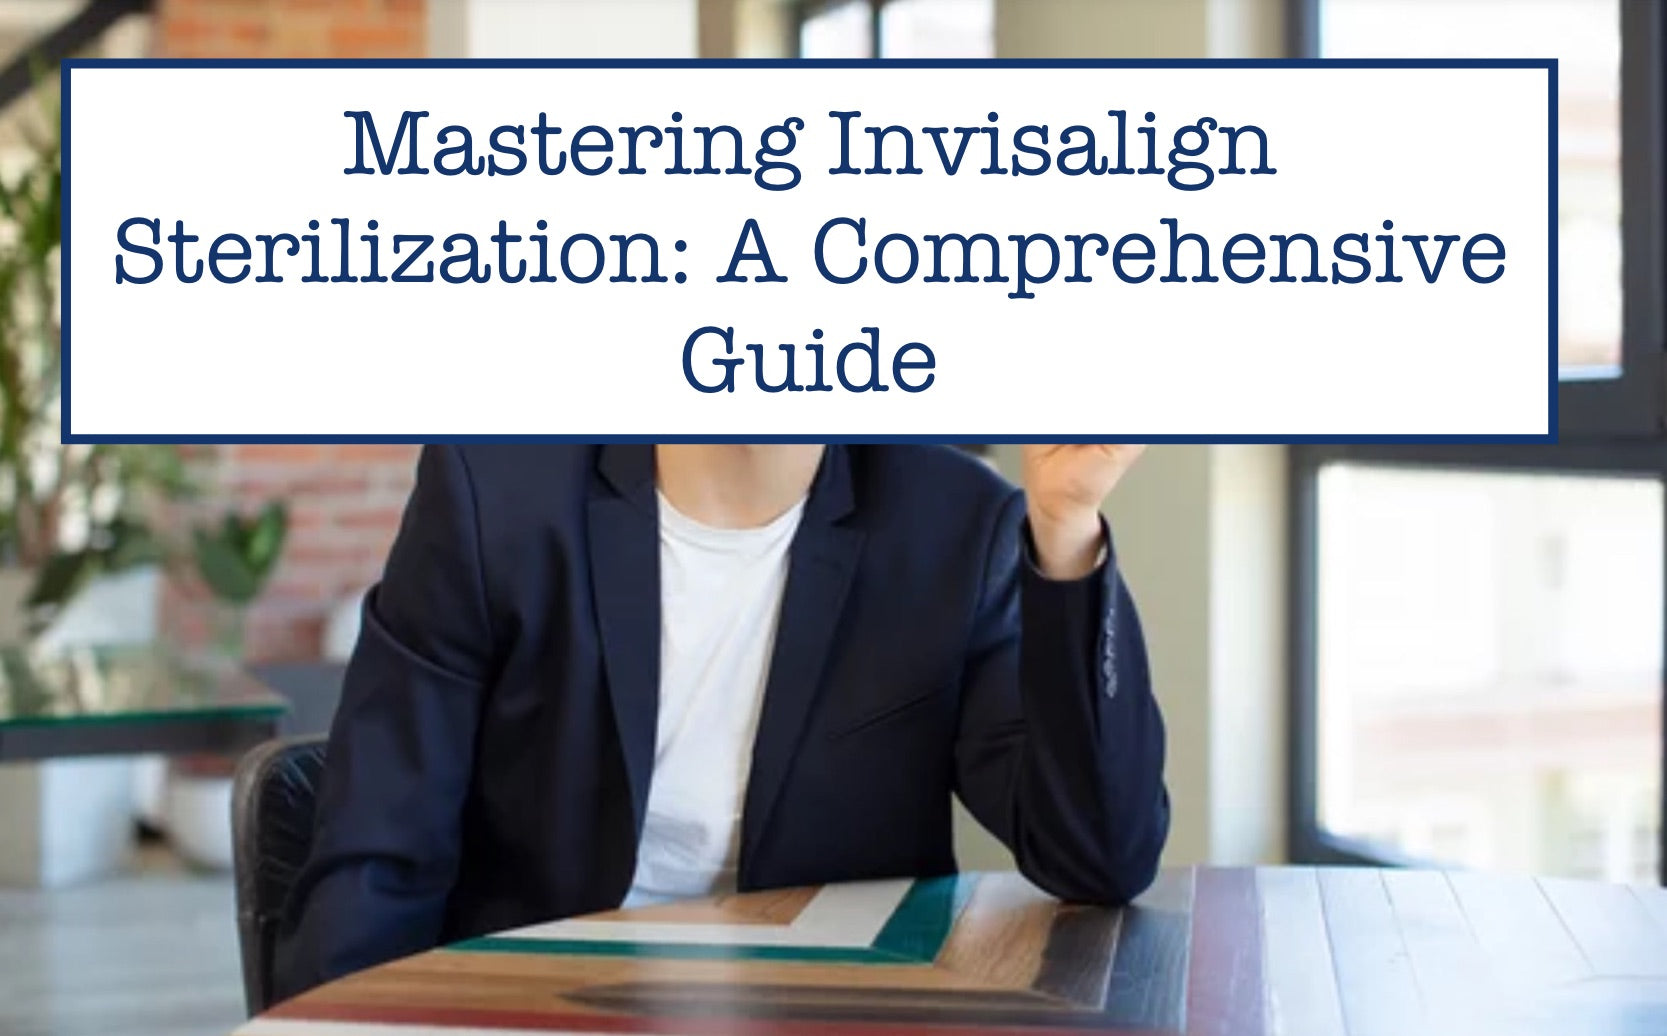 Mastering Invisalign Sterilization: A Comprehensive Guide